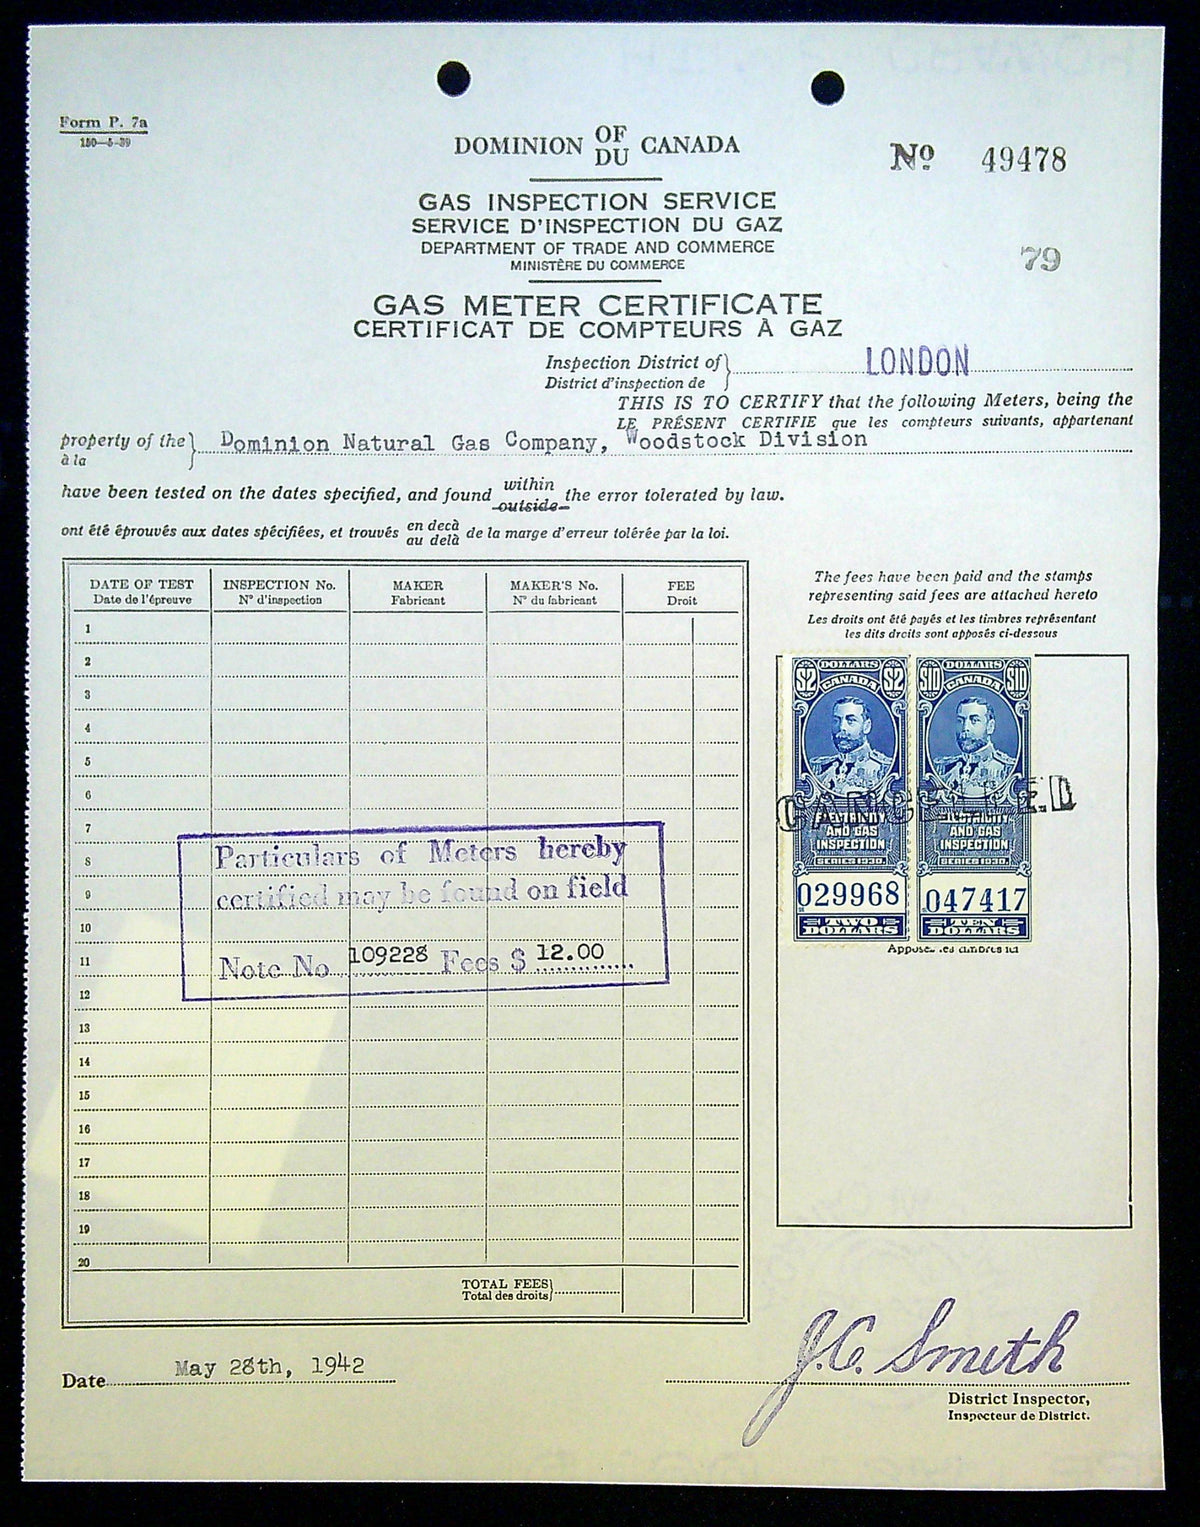 0057EG2203 - FEG9, 11 - Inspection Document